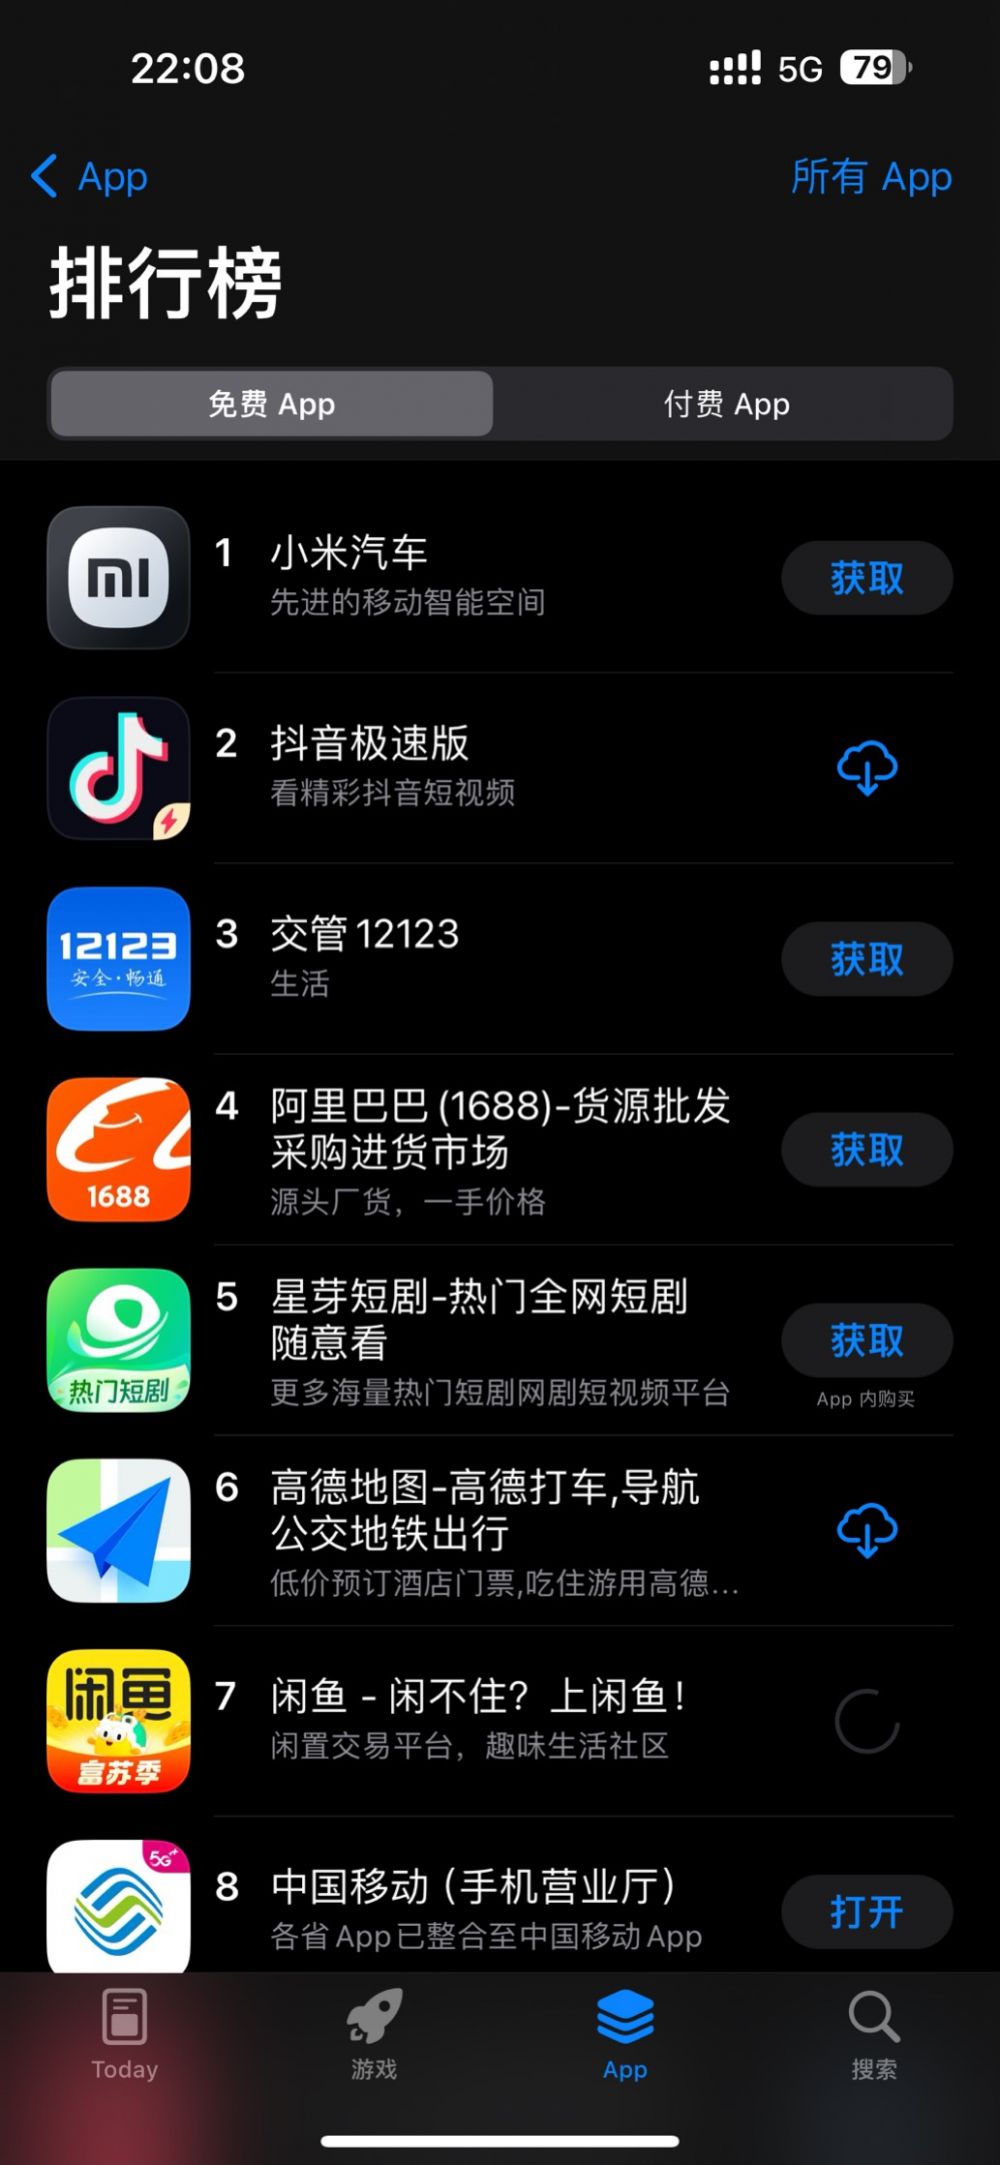 小米汽车App登顶苹果AppStore免费榜